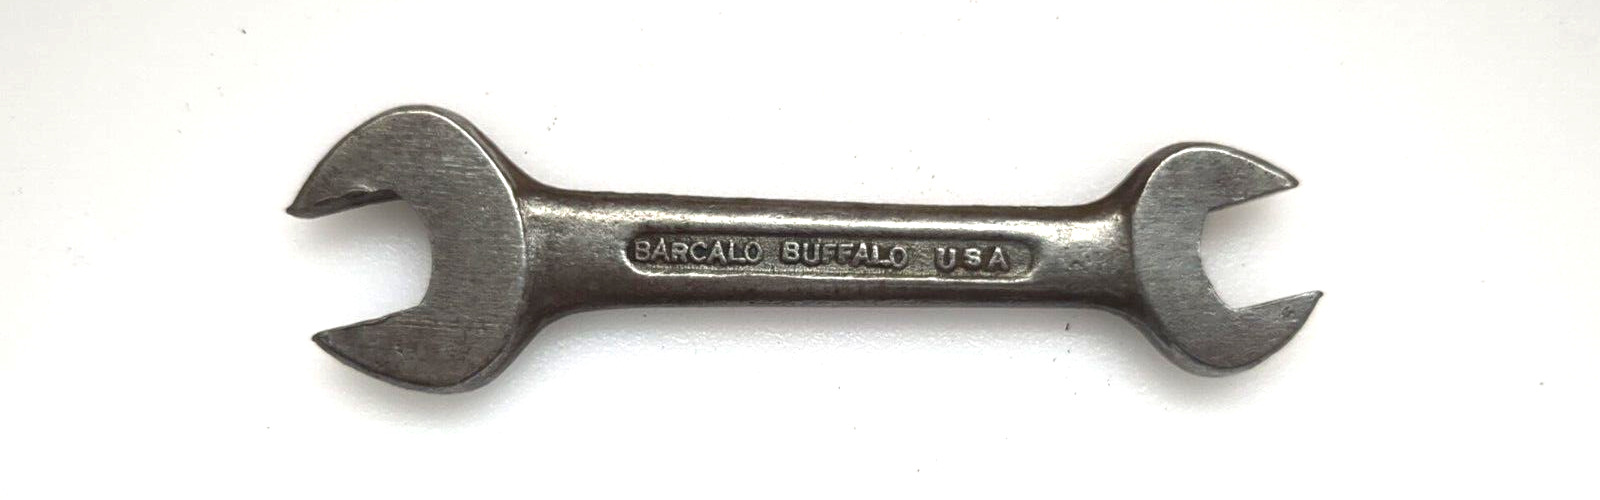 Vintage Barcalo Buffalo 7/16x3/8